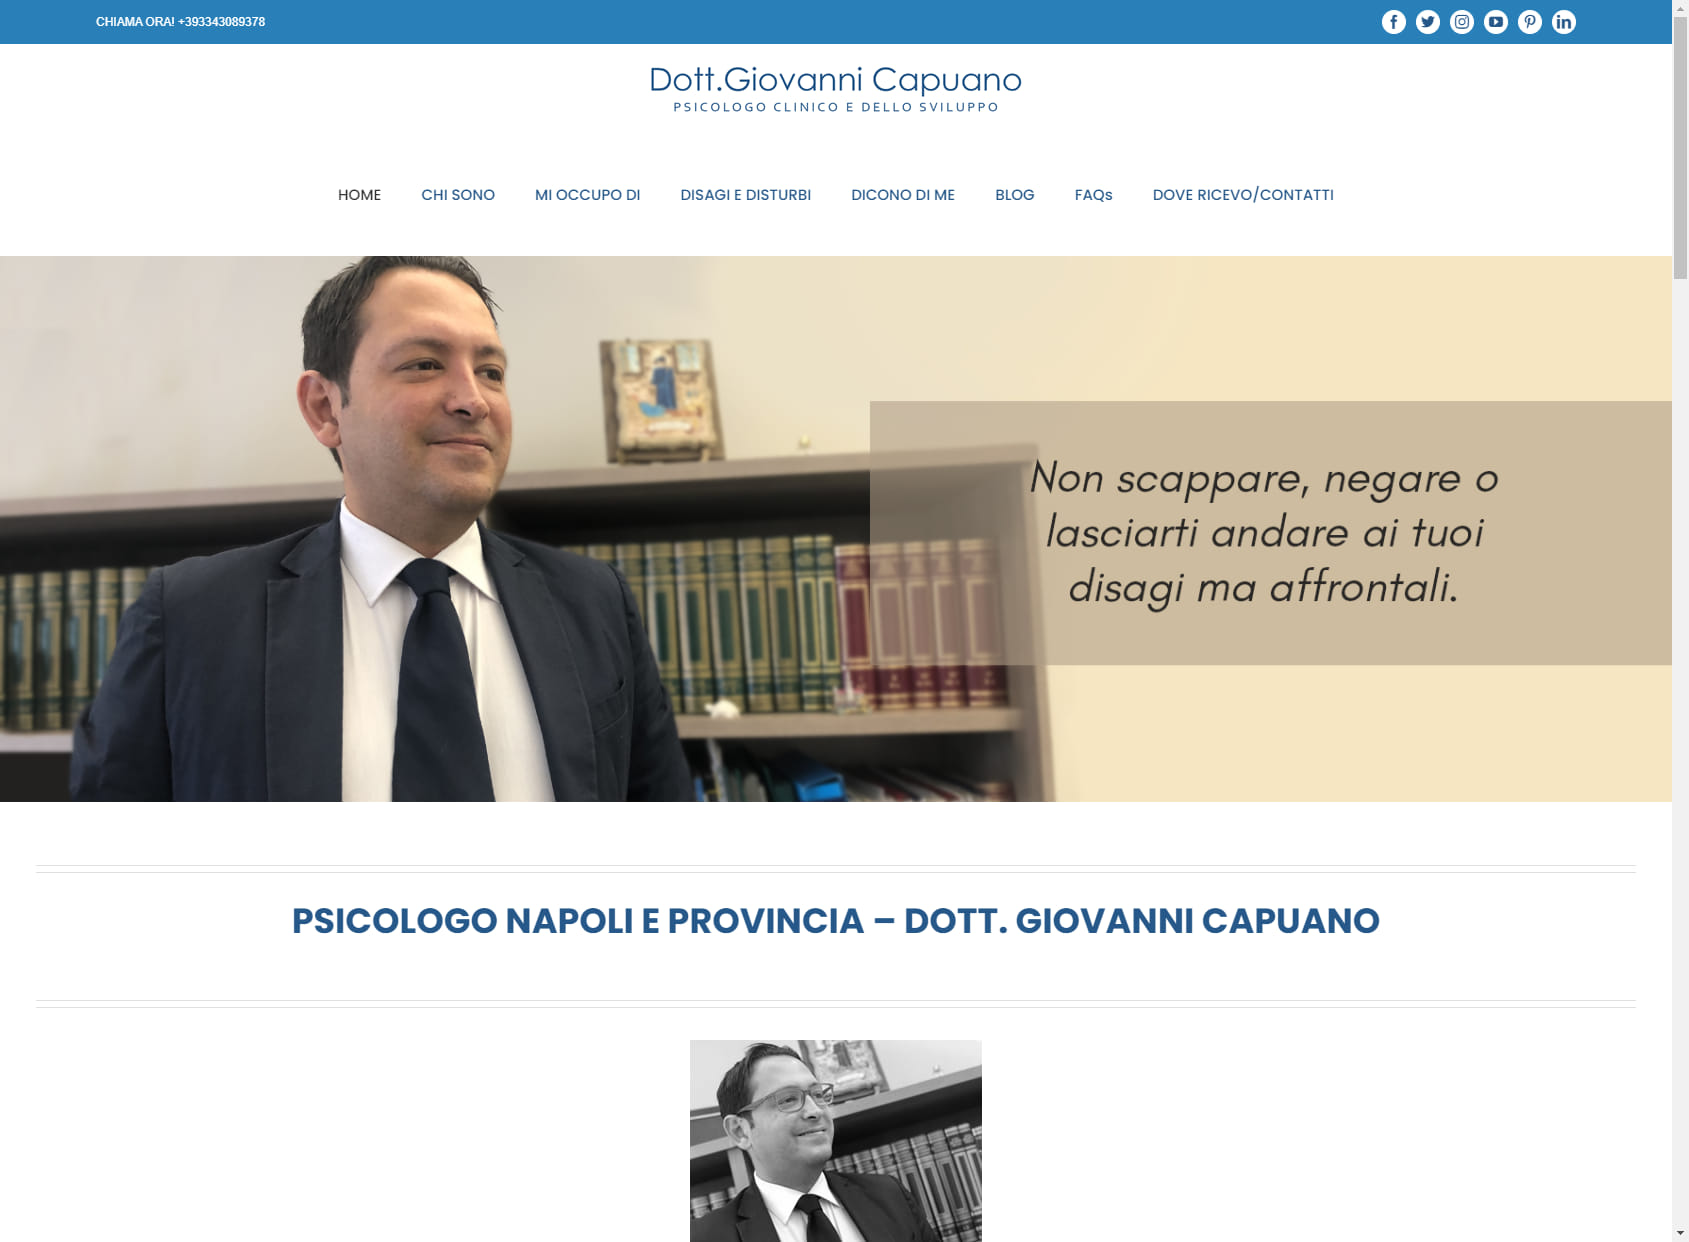 Psicologo Napoli e Provincia - Dott. Giovanni Capuano